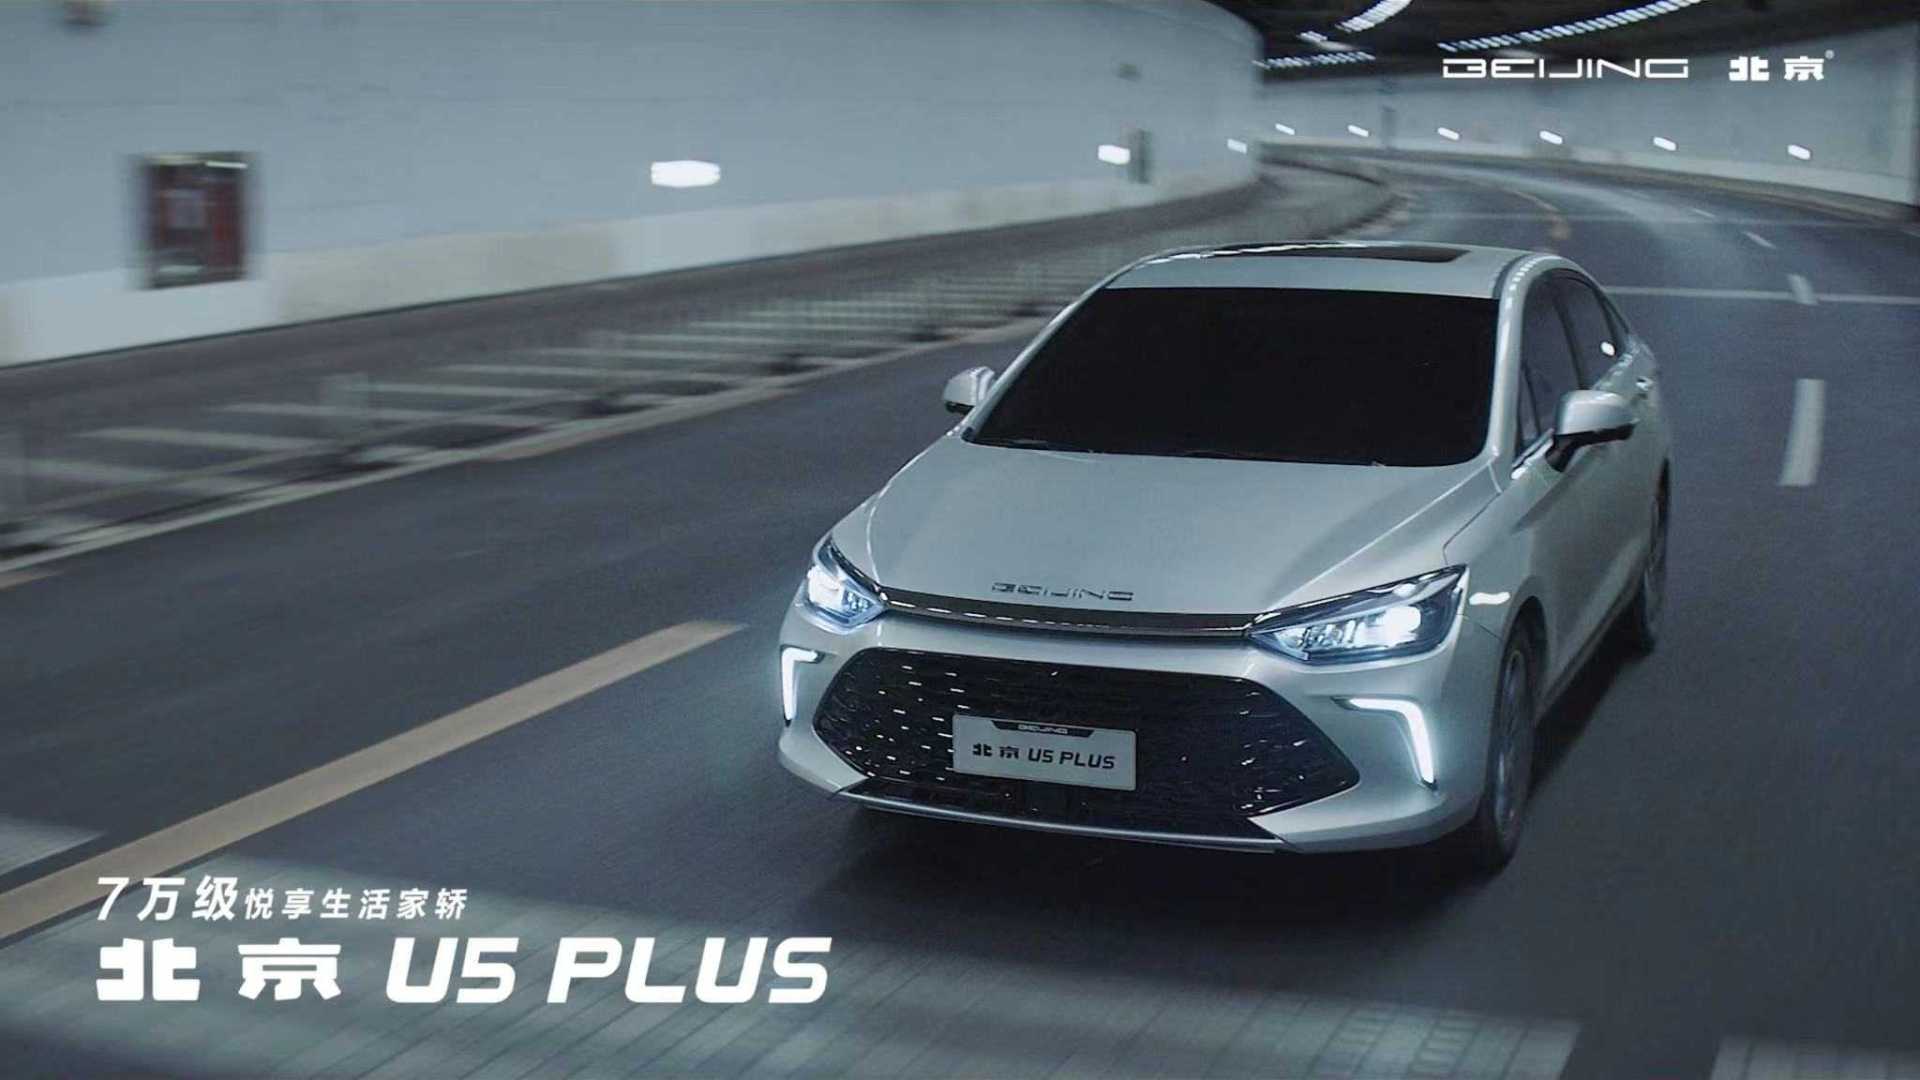 北京汽车U5 Plus 产品视频